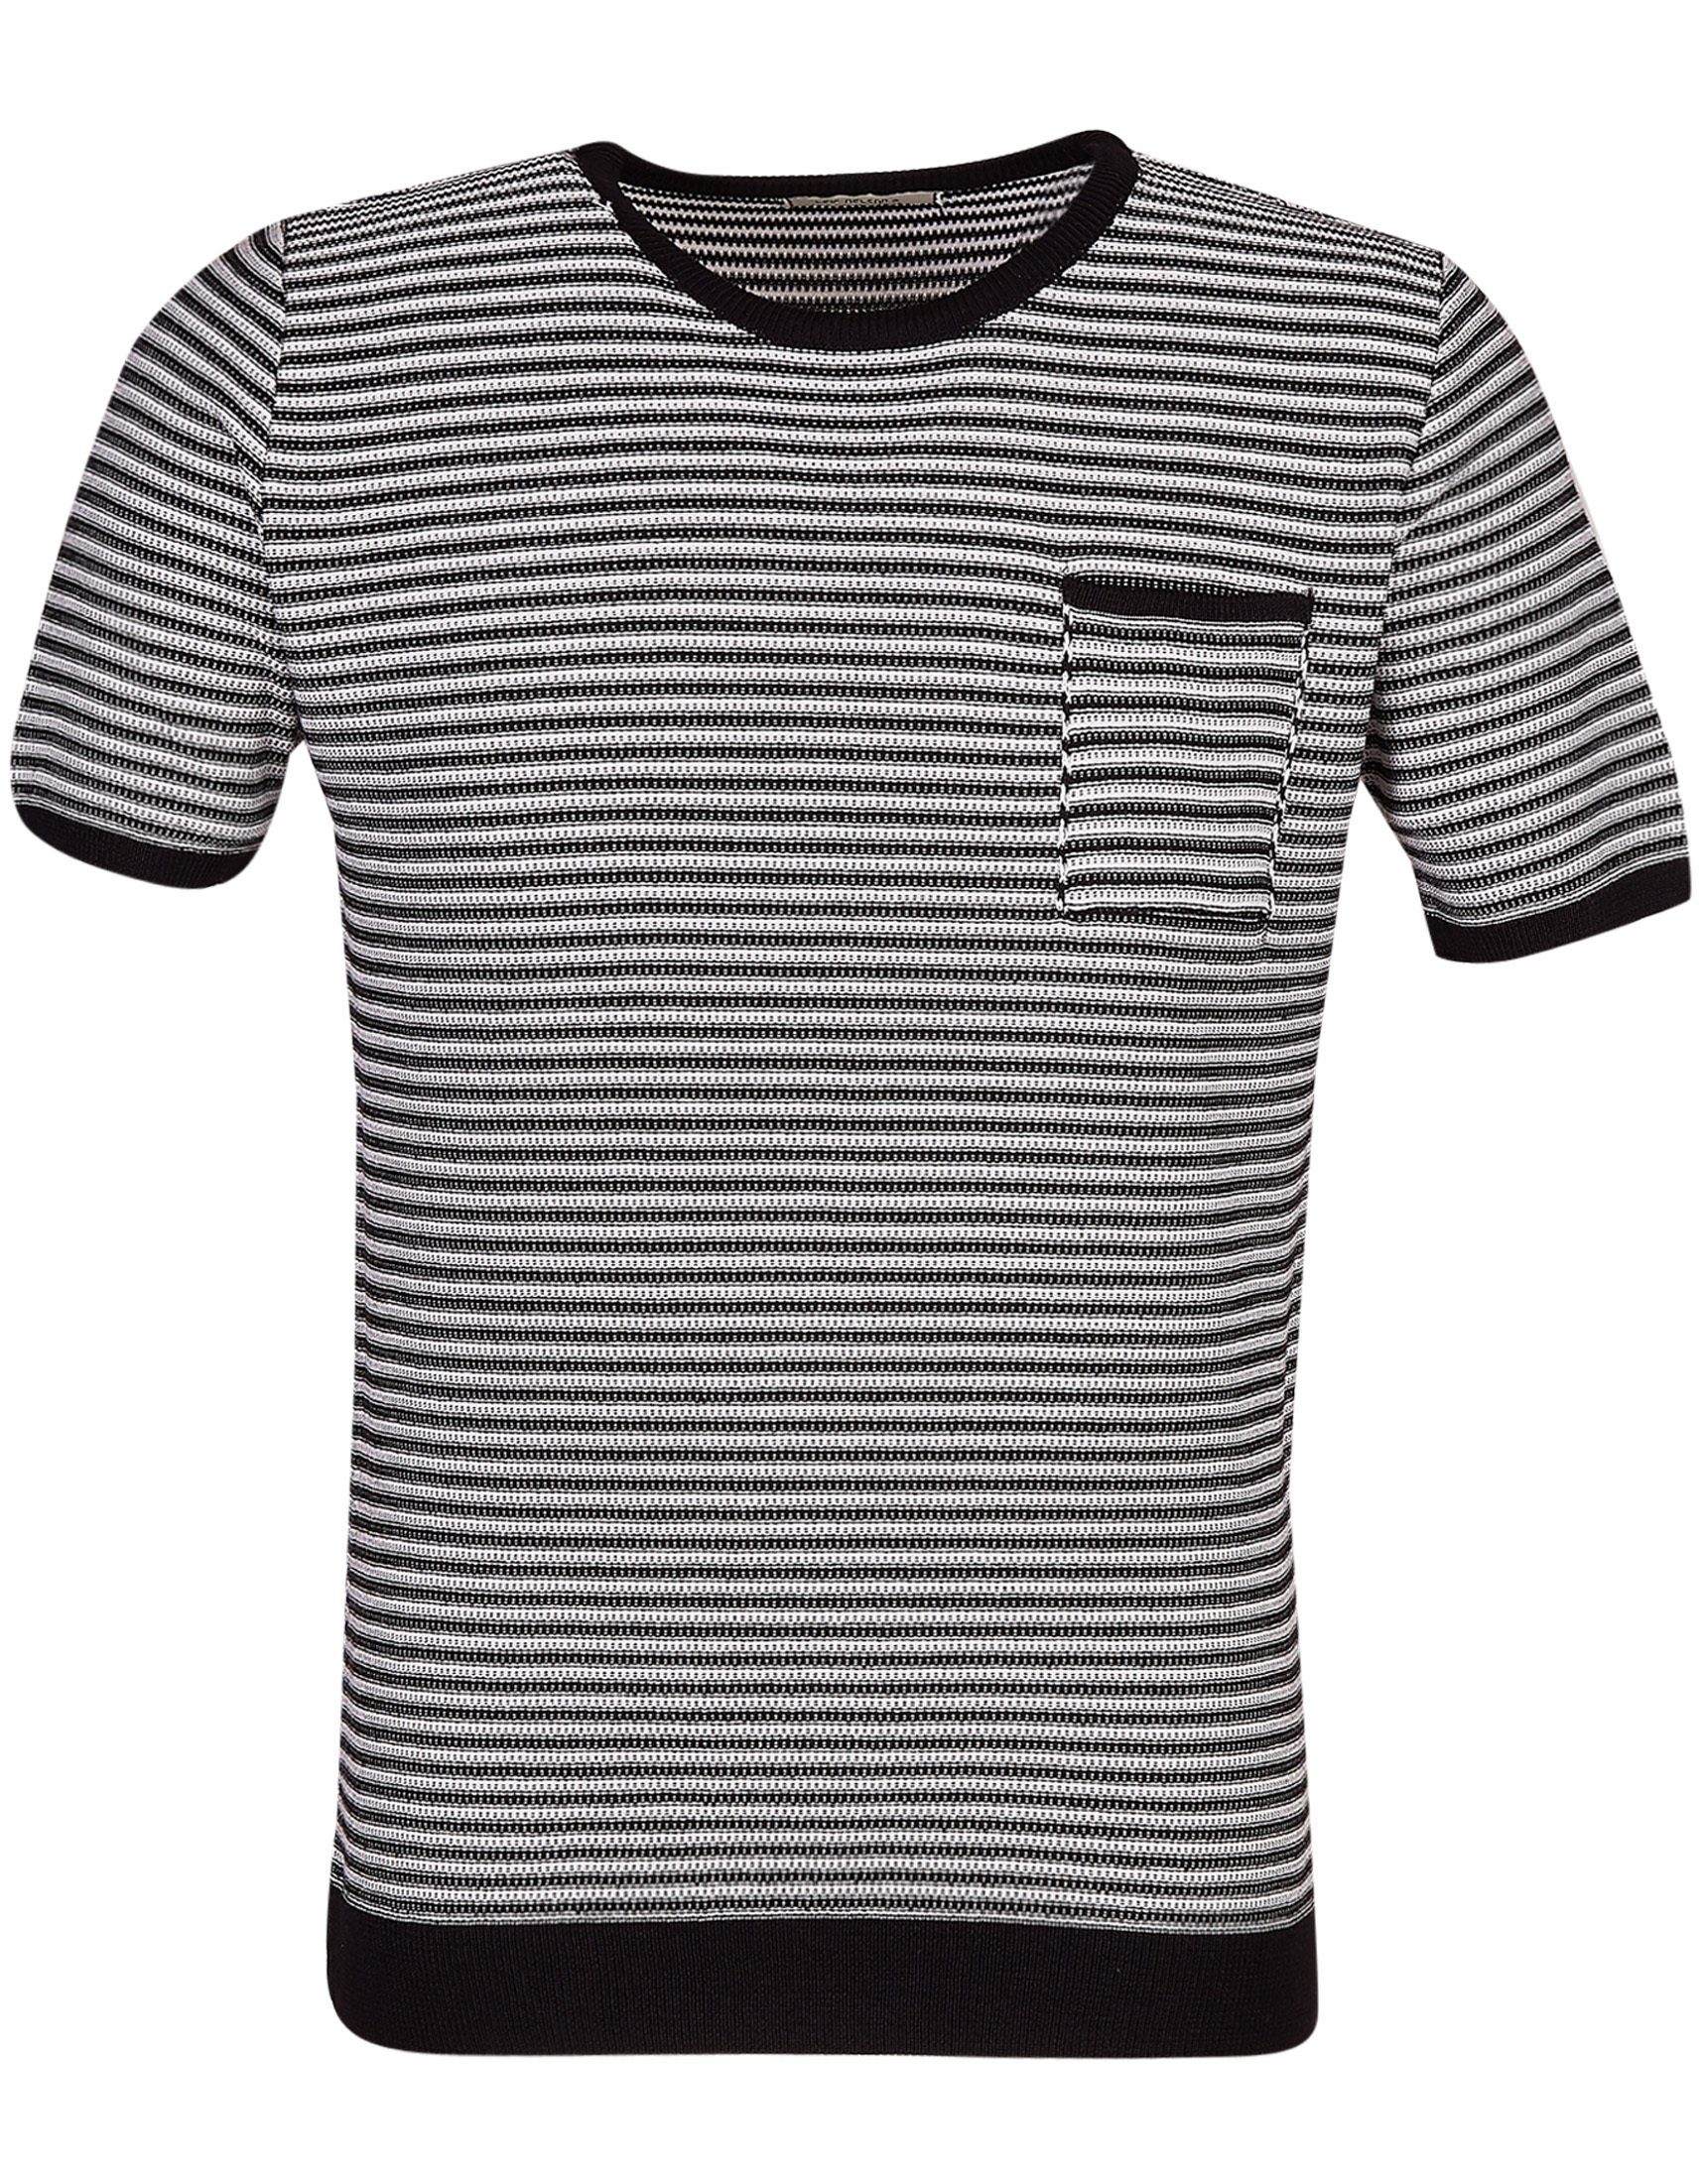 T-Shirt Nelson LN-7650 schwarz-ecruweiß normal Leif Rundhals